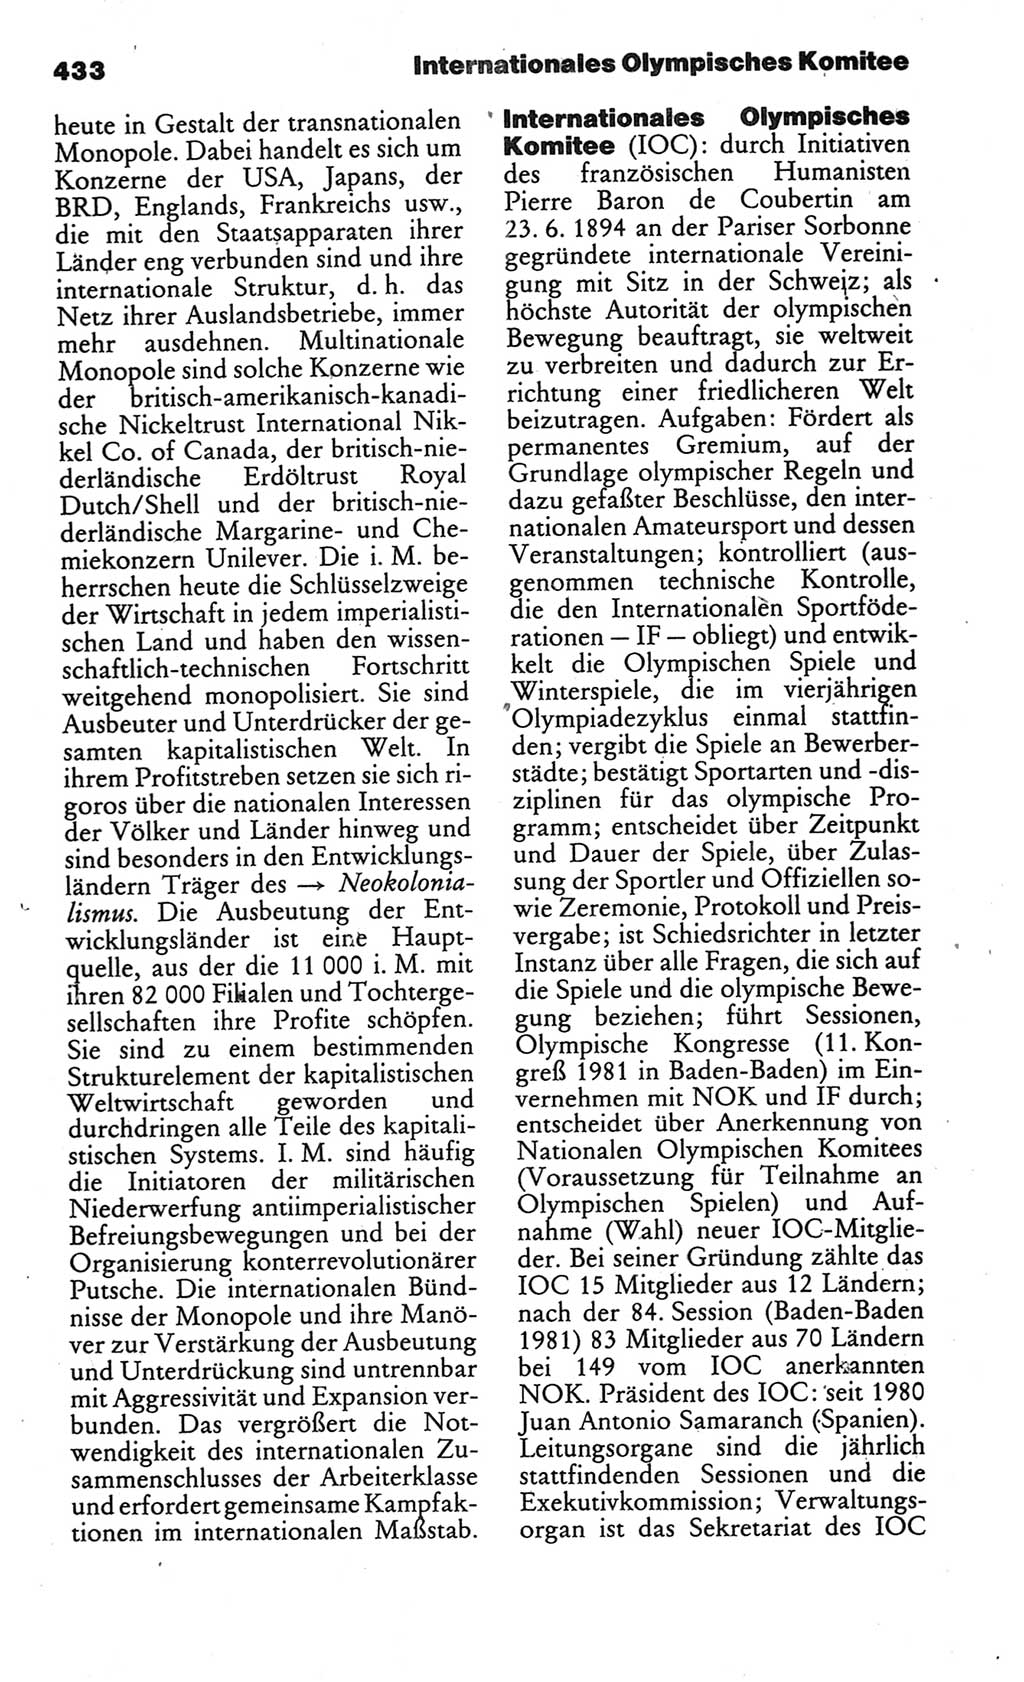 Kleines politisches Wörterbuch [Deutsche Demokratische Republik (DDR)] 1986, Seite 433 (Kl. pol. Wb. DDR 1986, S. 433)